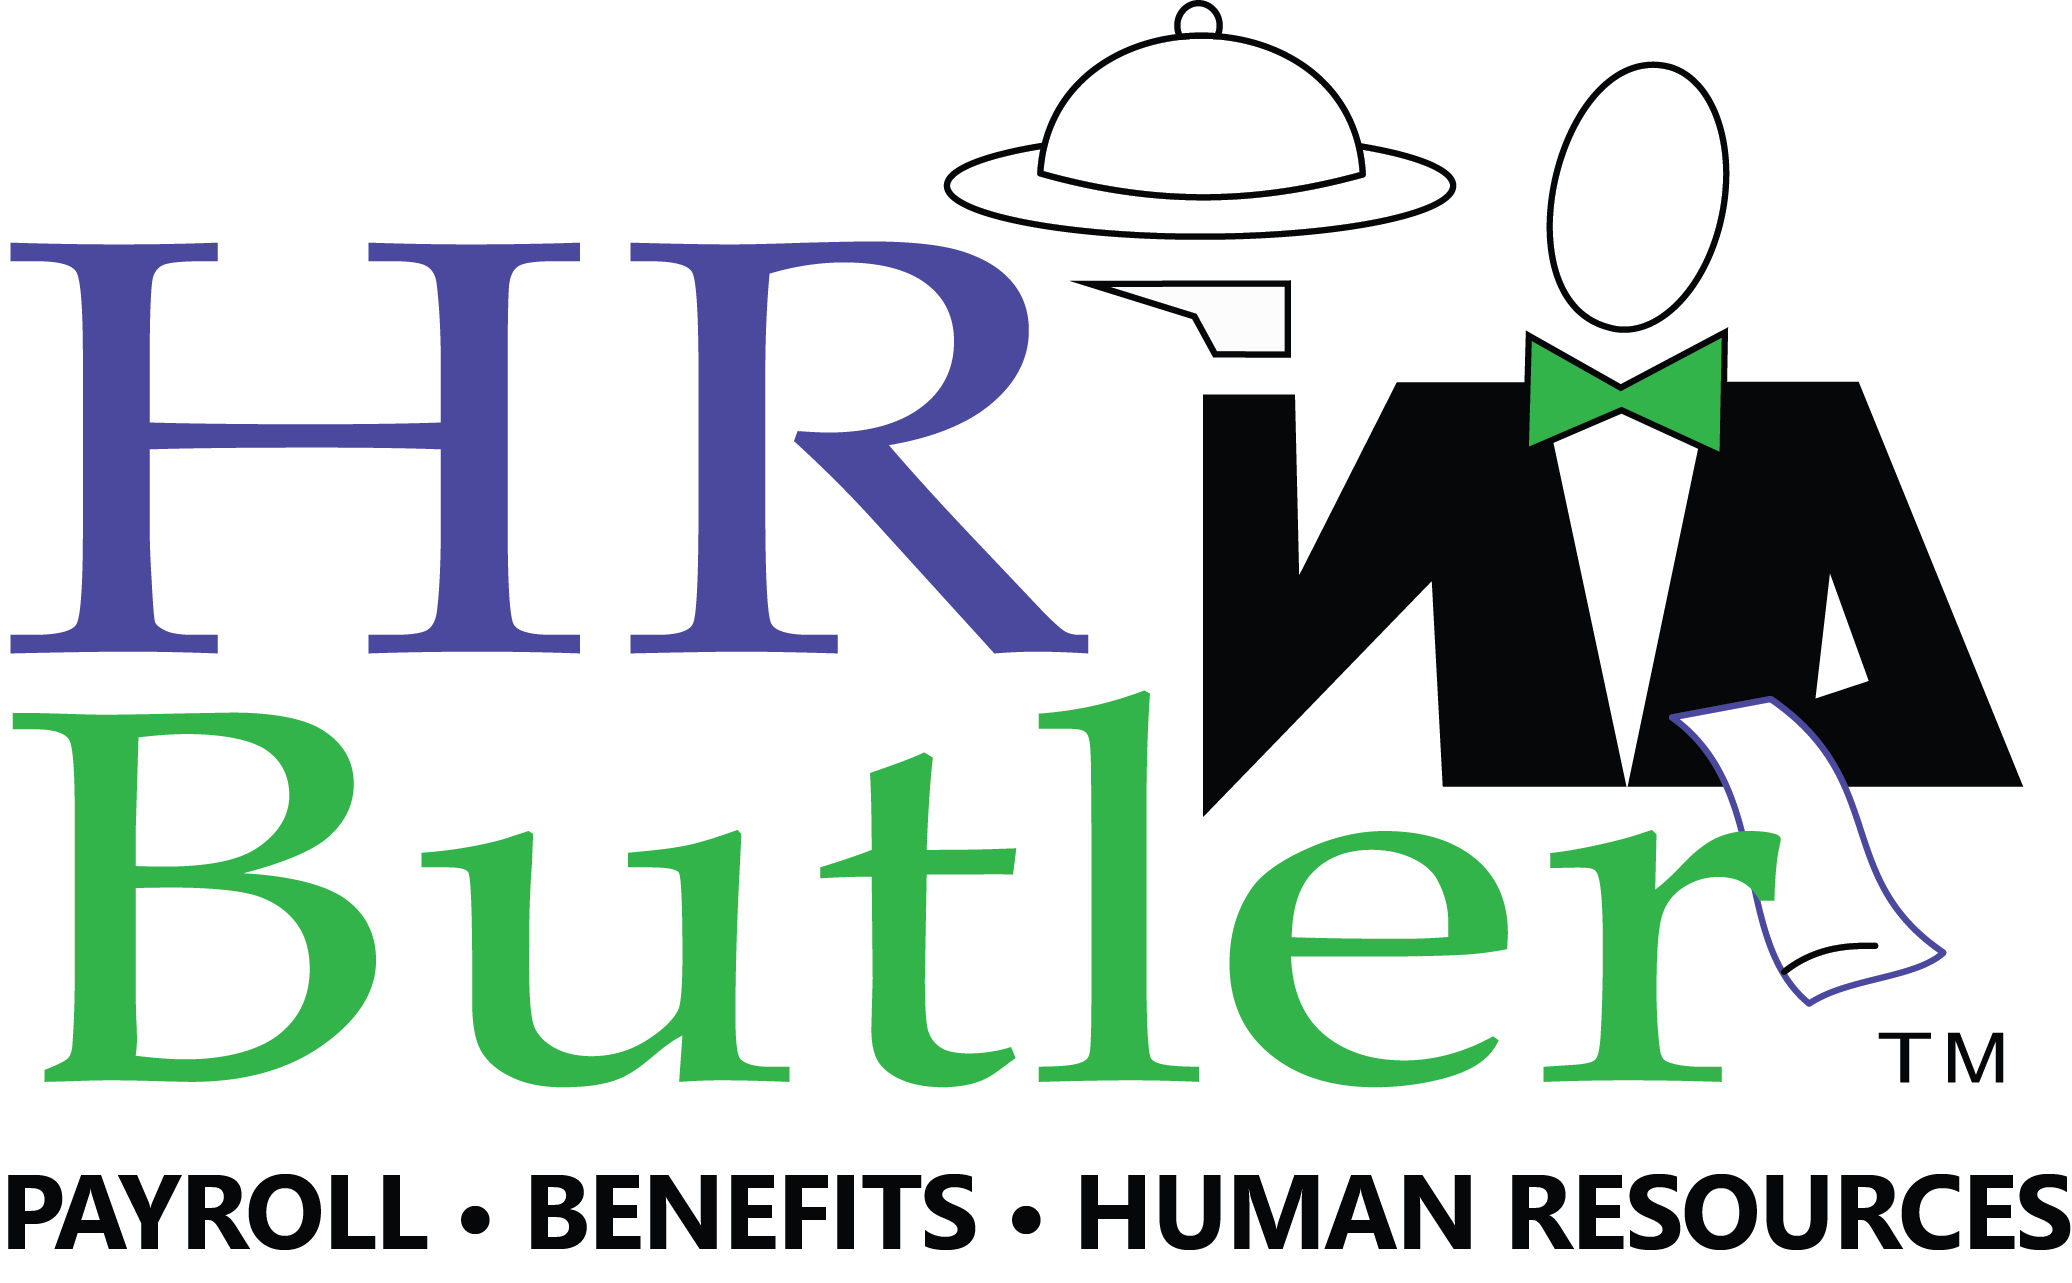 HR Butler